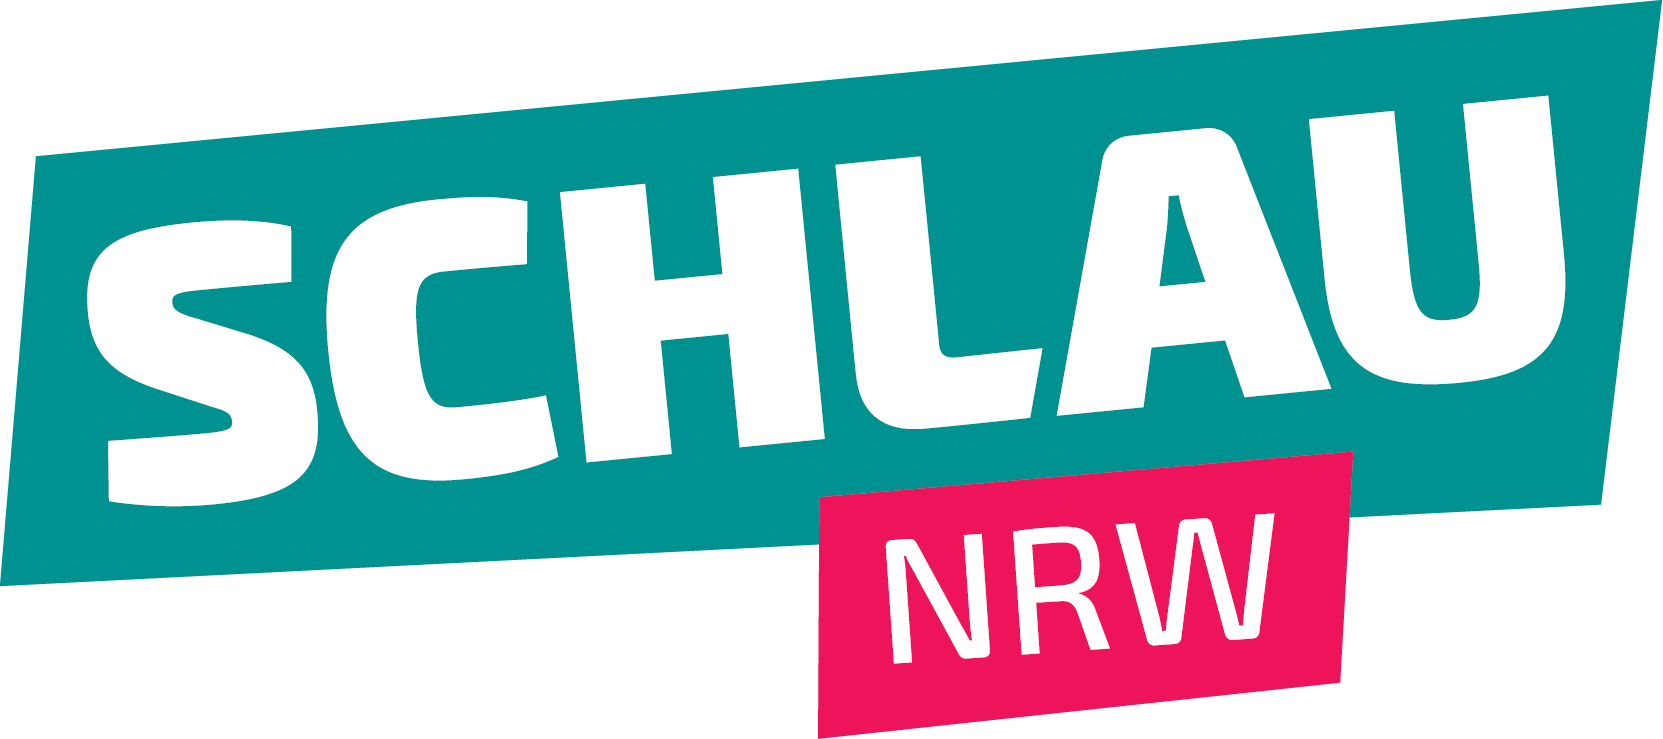 Logo: SCHLAU NRW